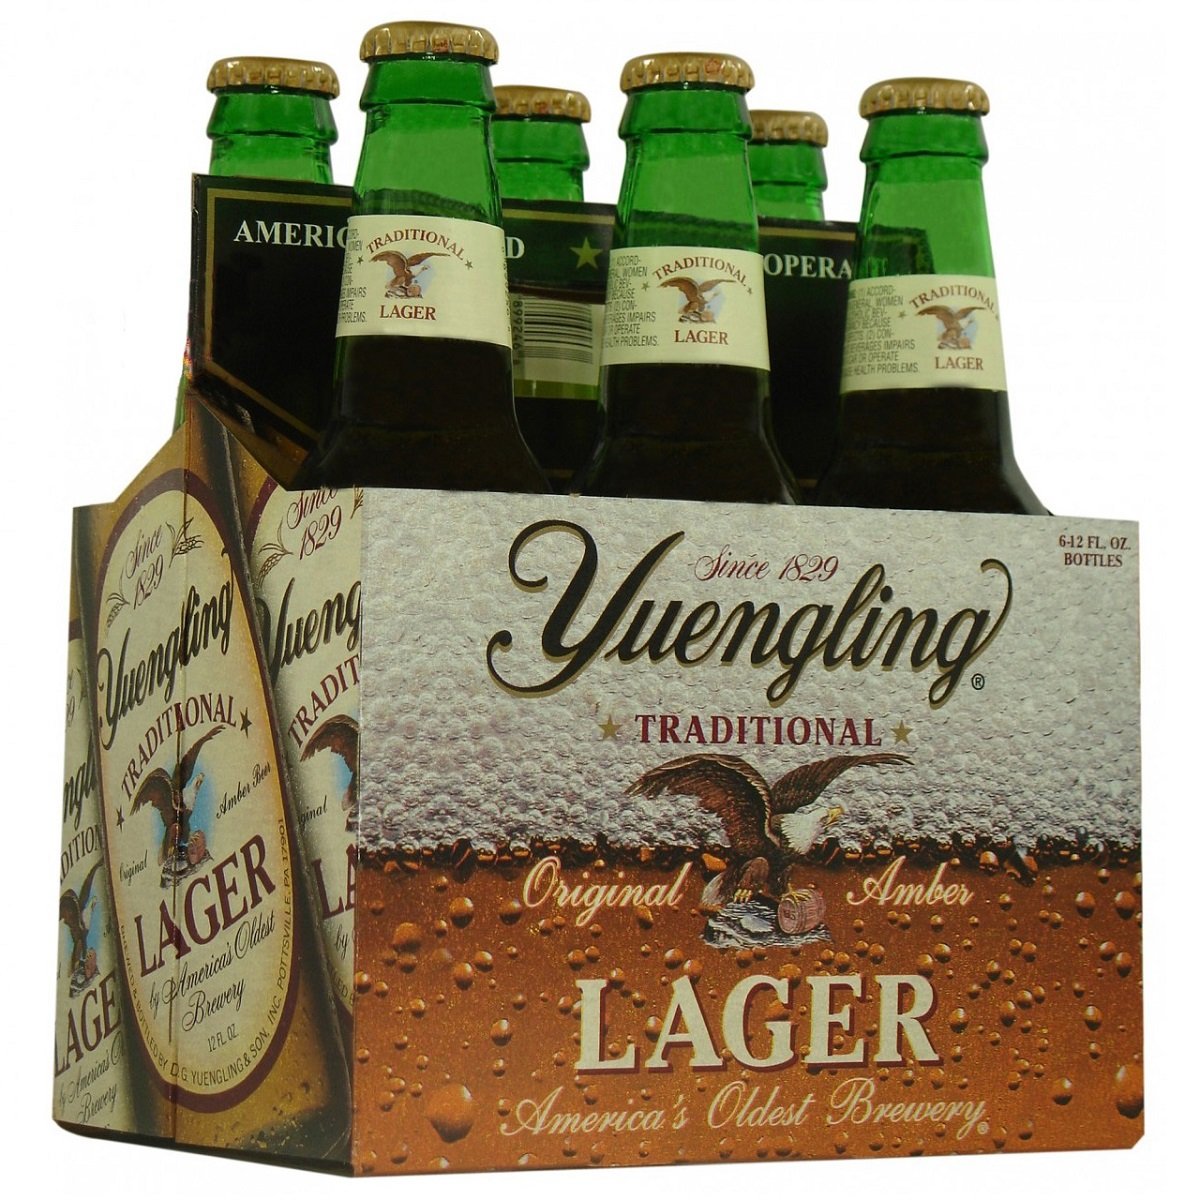 Yuengling-Lager-Bottles12oz-6-pack.jpg